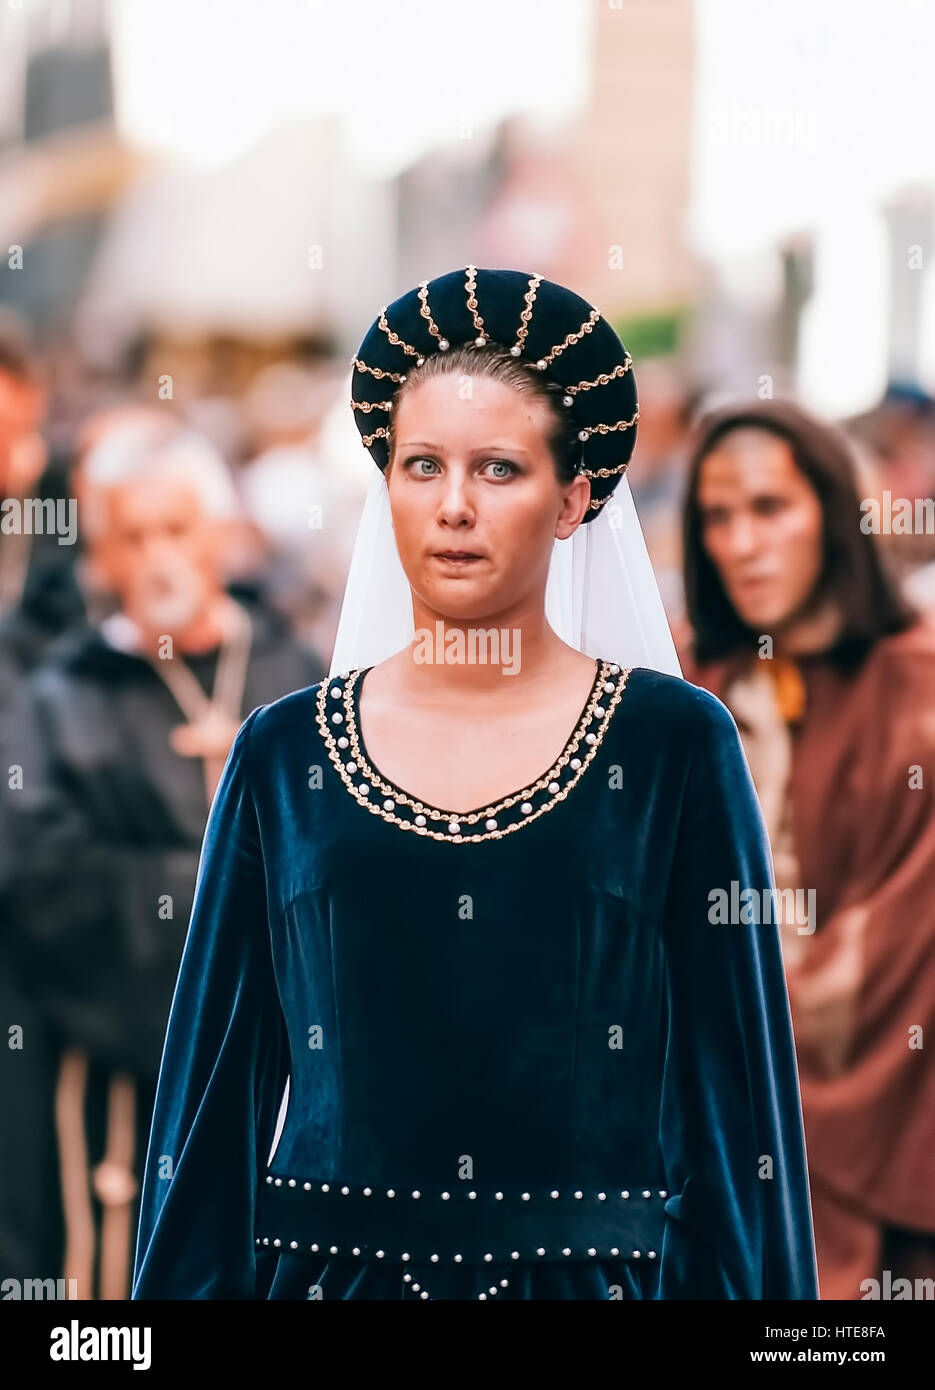 Asti, Italie - le 19 septembre 2010 : Princesse médiévale, au cours de la parade historique de la Palio d'Asti en Piémont, Italie- Dame du Moyen Âge Banque D'Images